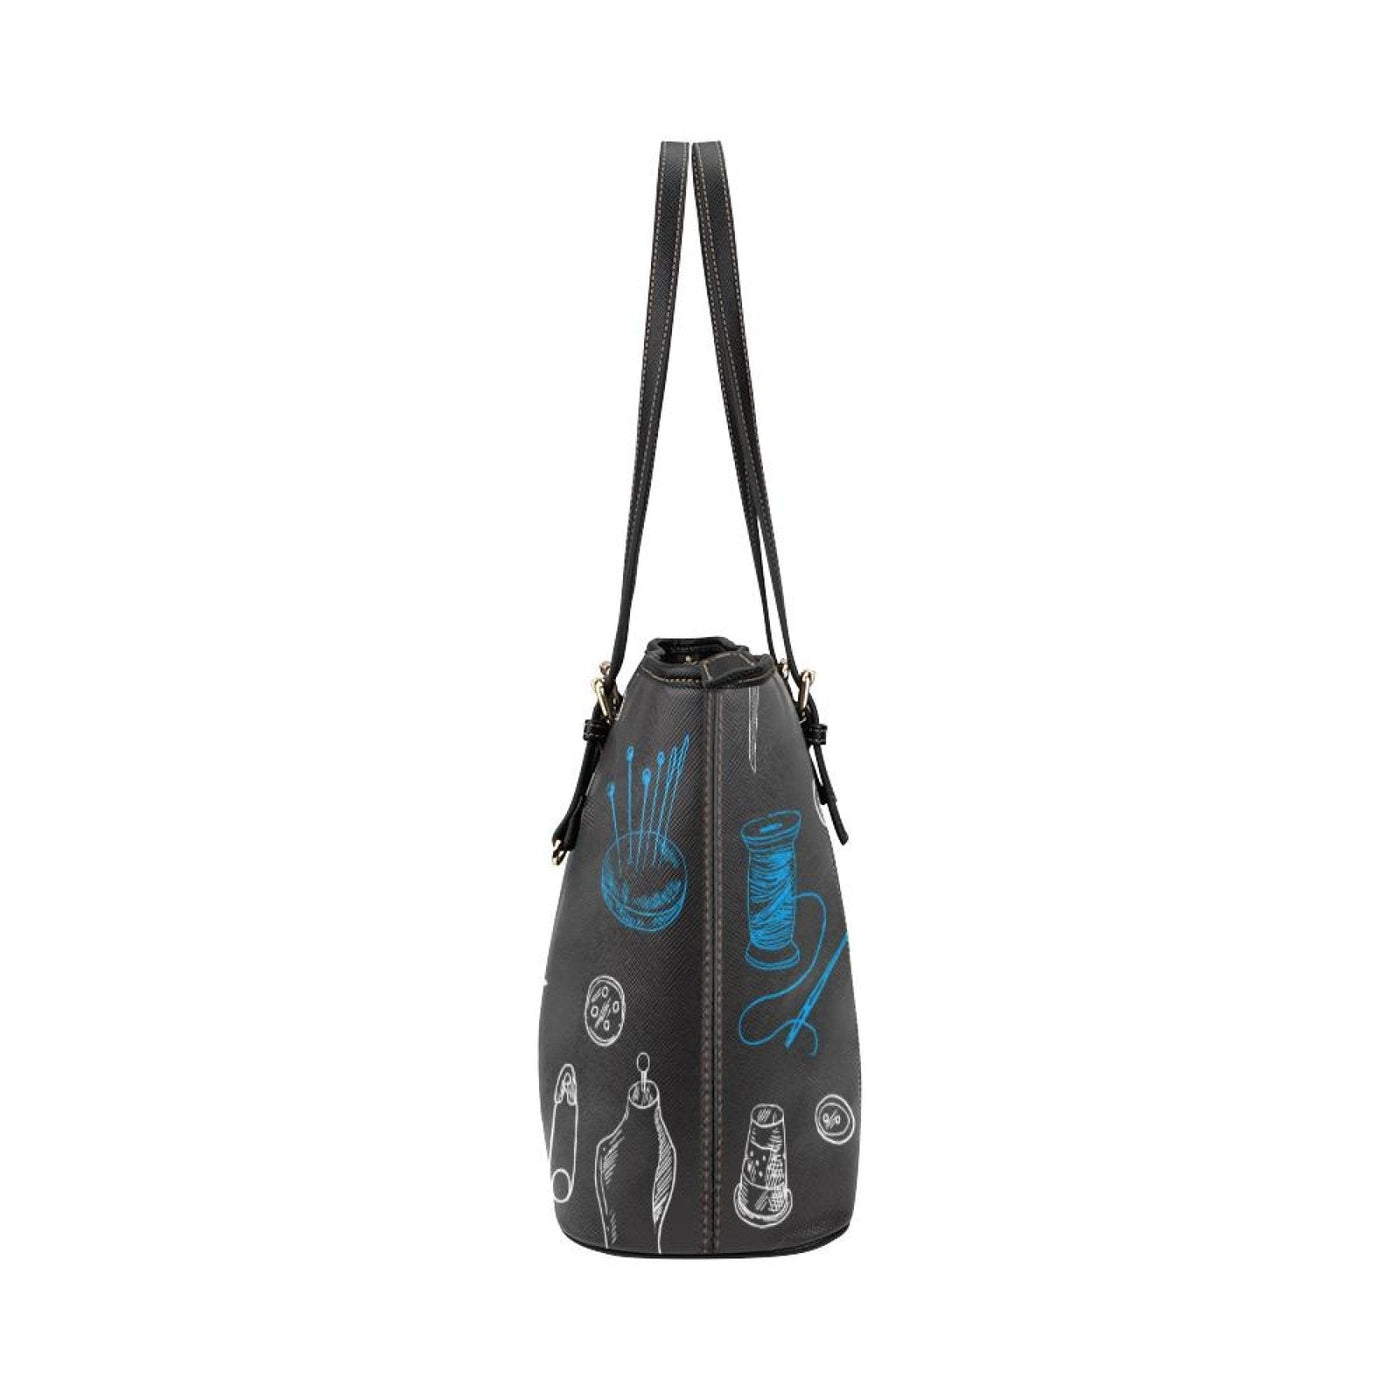 Large Leather Tote Shoulder Bag - Black And Blue Seamstress Pattern Illustration